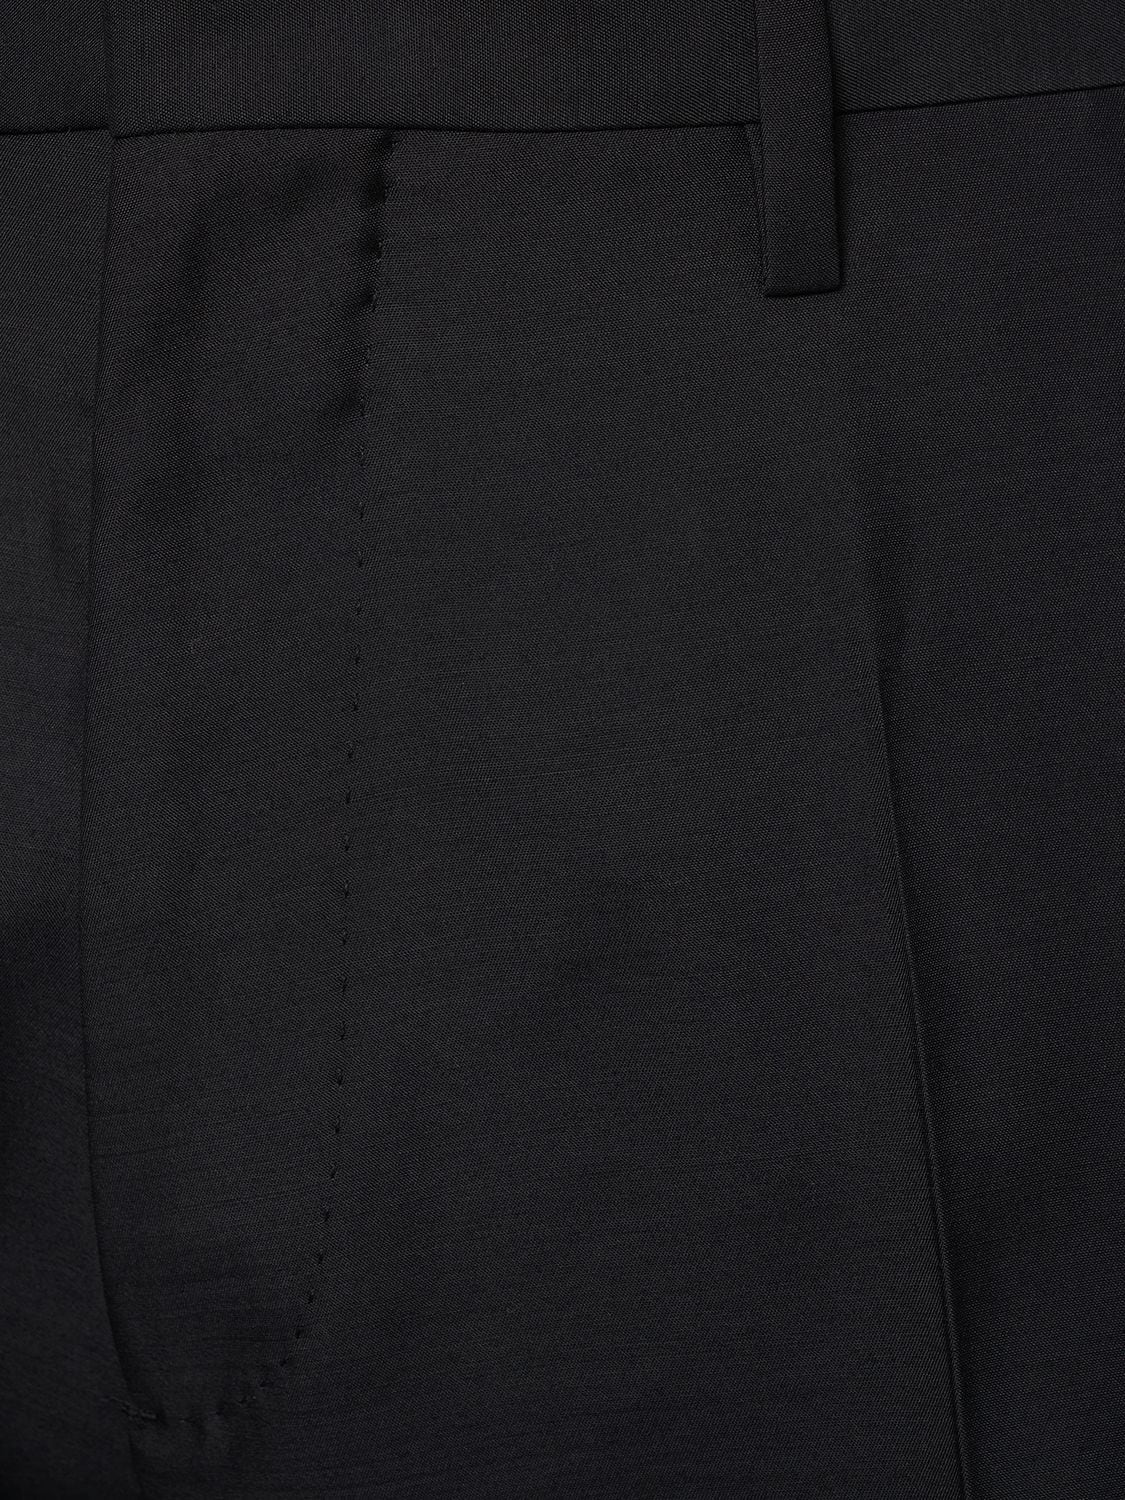 Shop Dsquared2 Berlin Wool & Silk Suit In Black